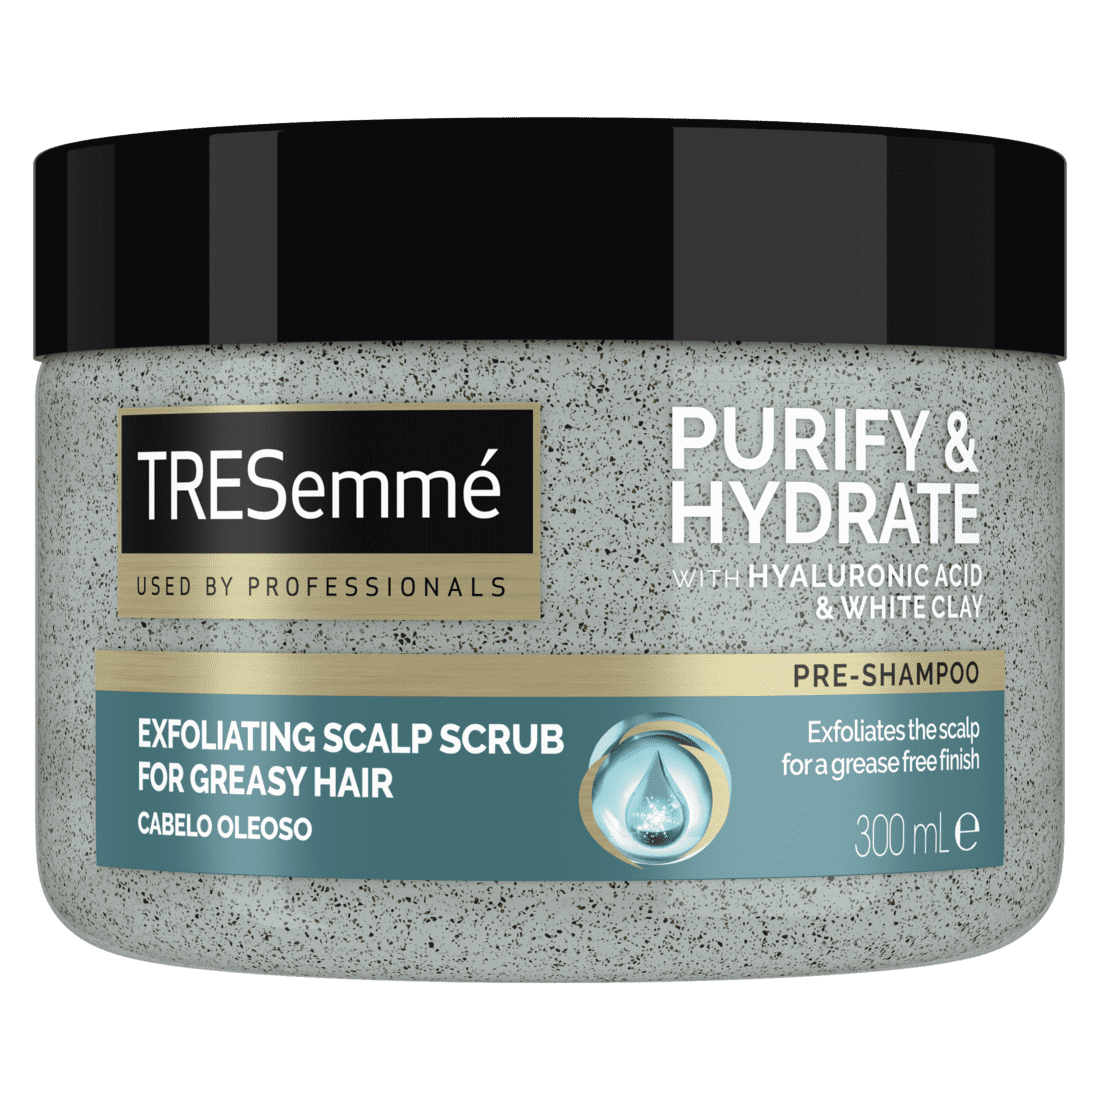 TRESemmé Purify & Hydrate fejbőrradír, 300 ml